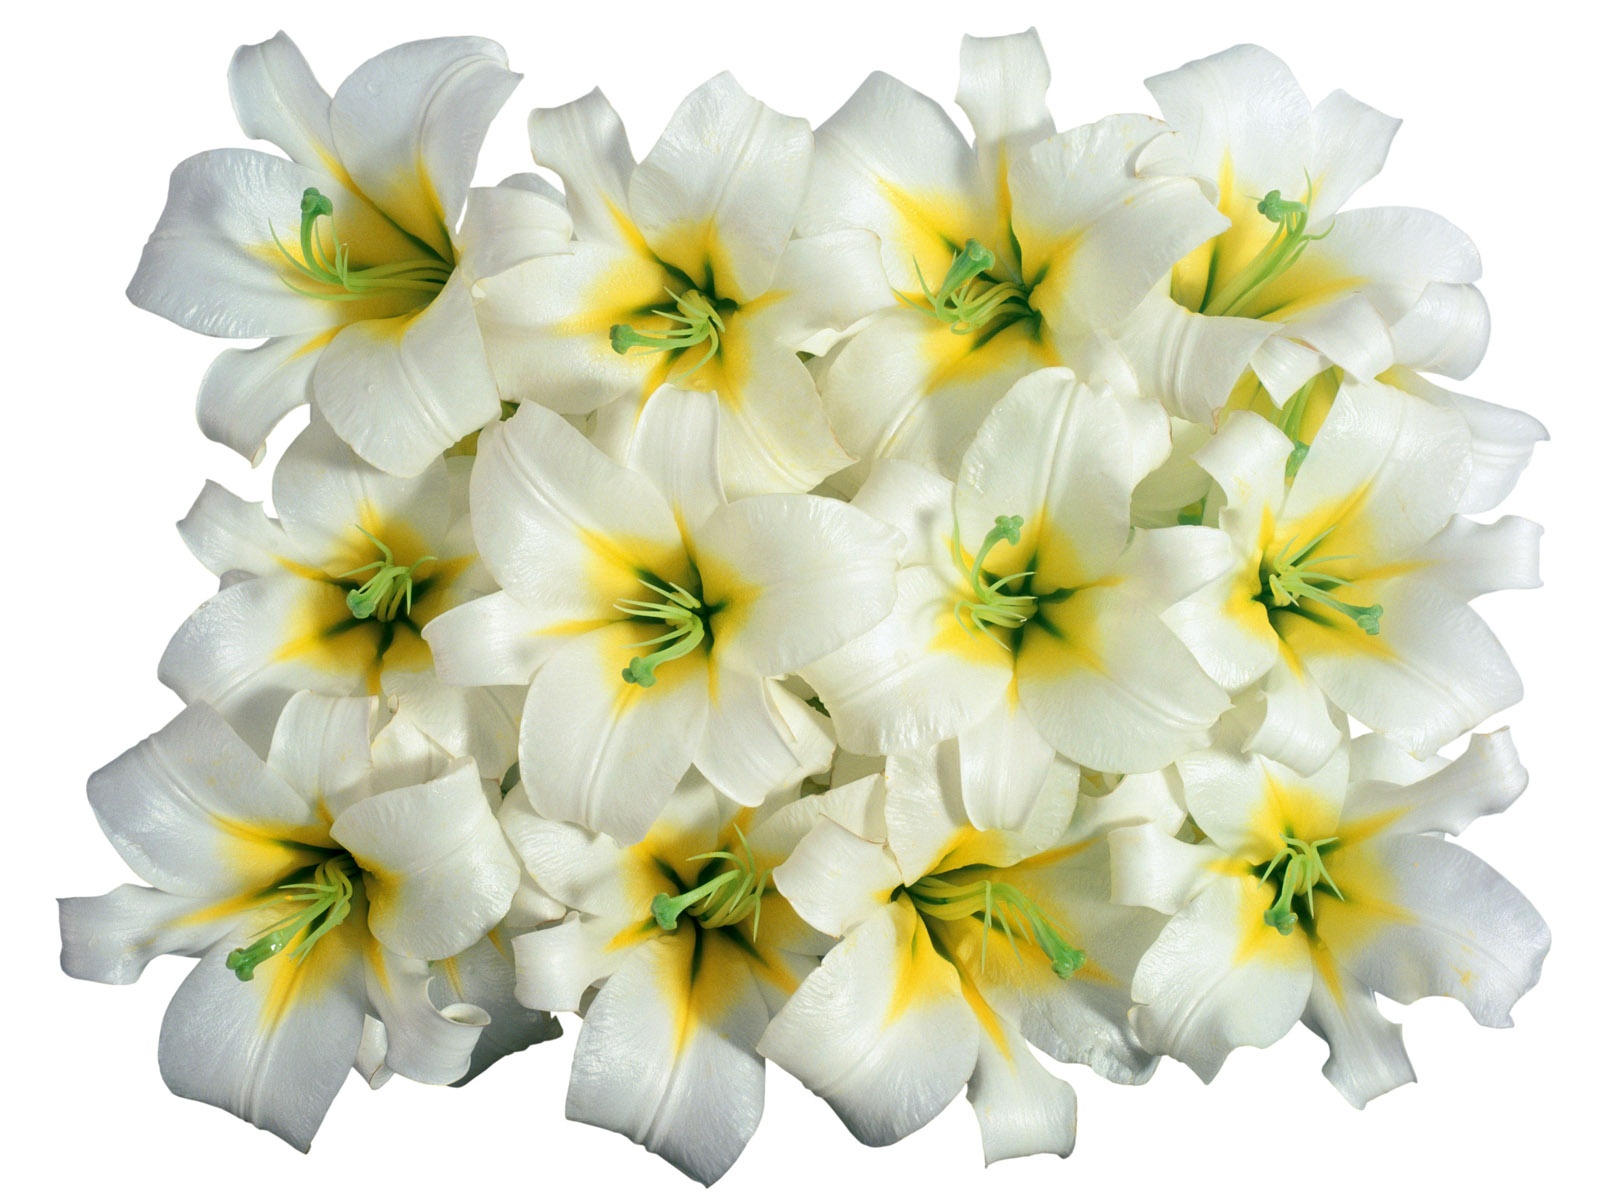 눈같이 흰 꽃 벽지 #3 - 1600x1200